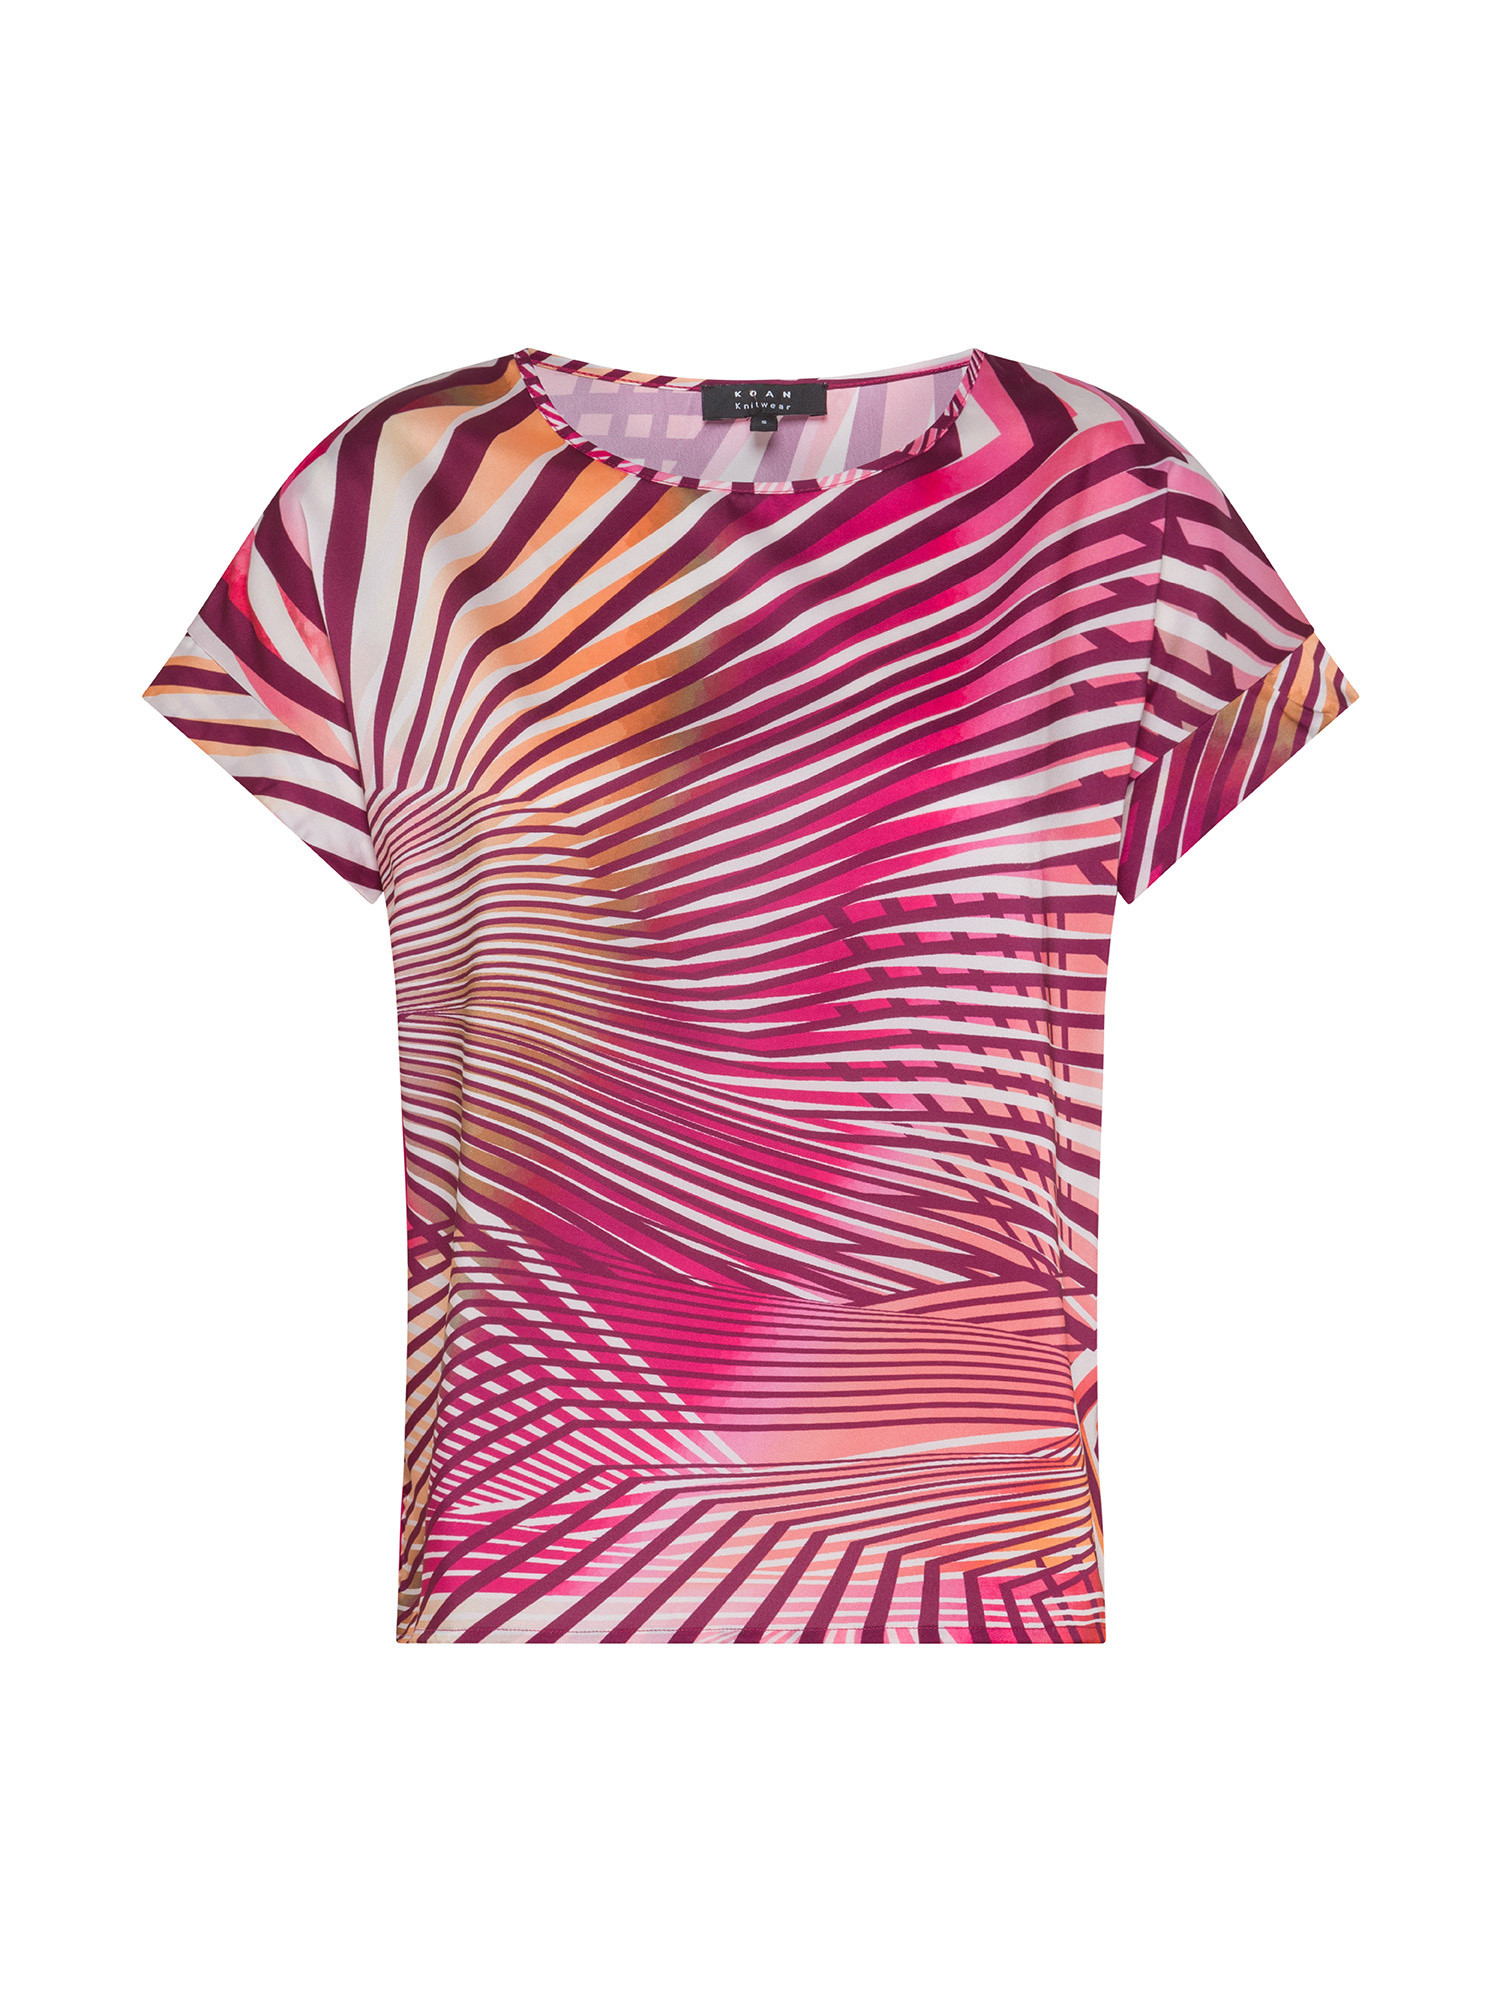 Koan - T-shirt con micro fantasia, Rosa fuxia, large image number 0